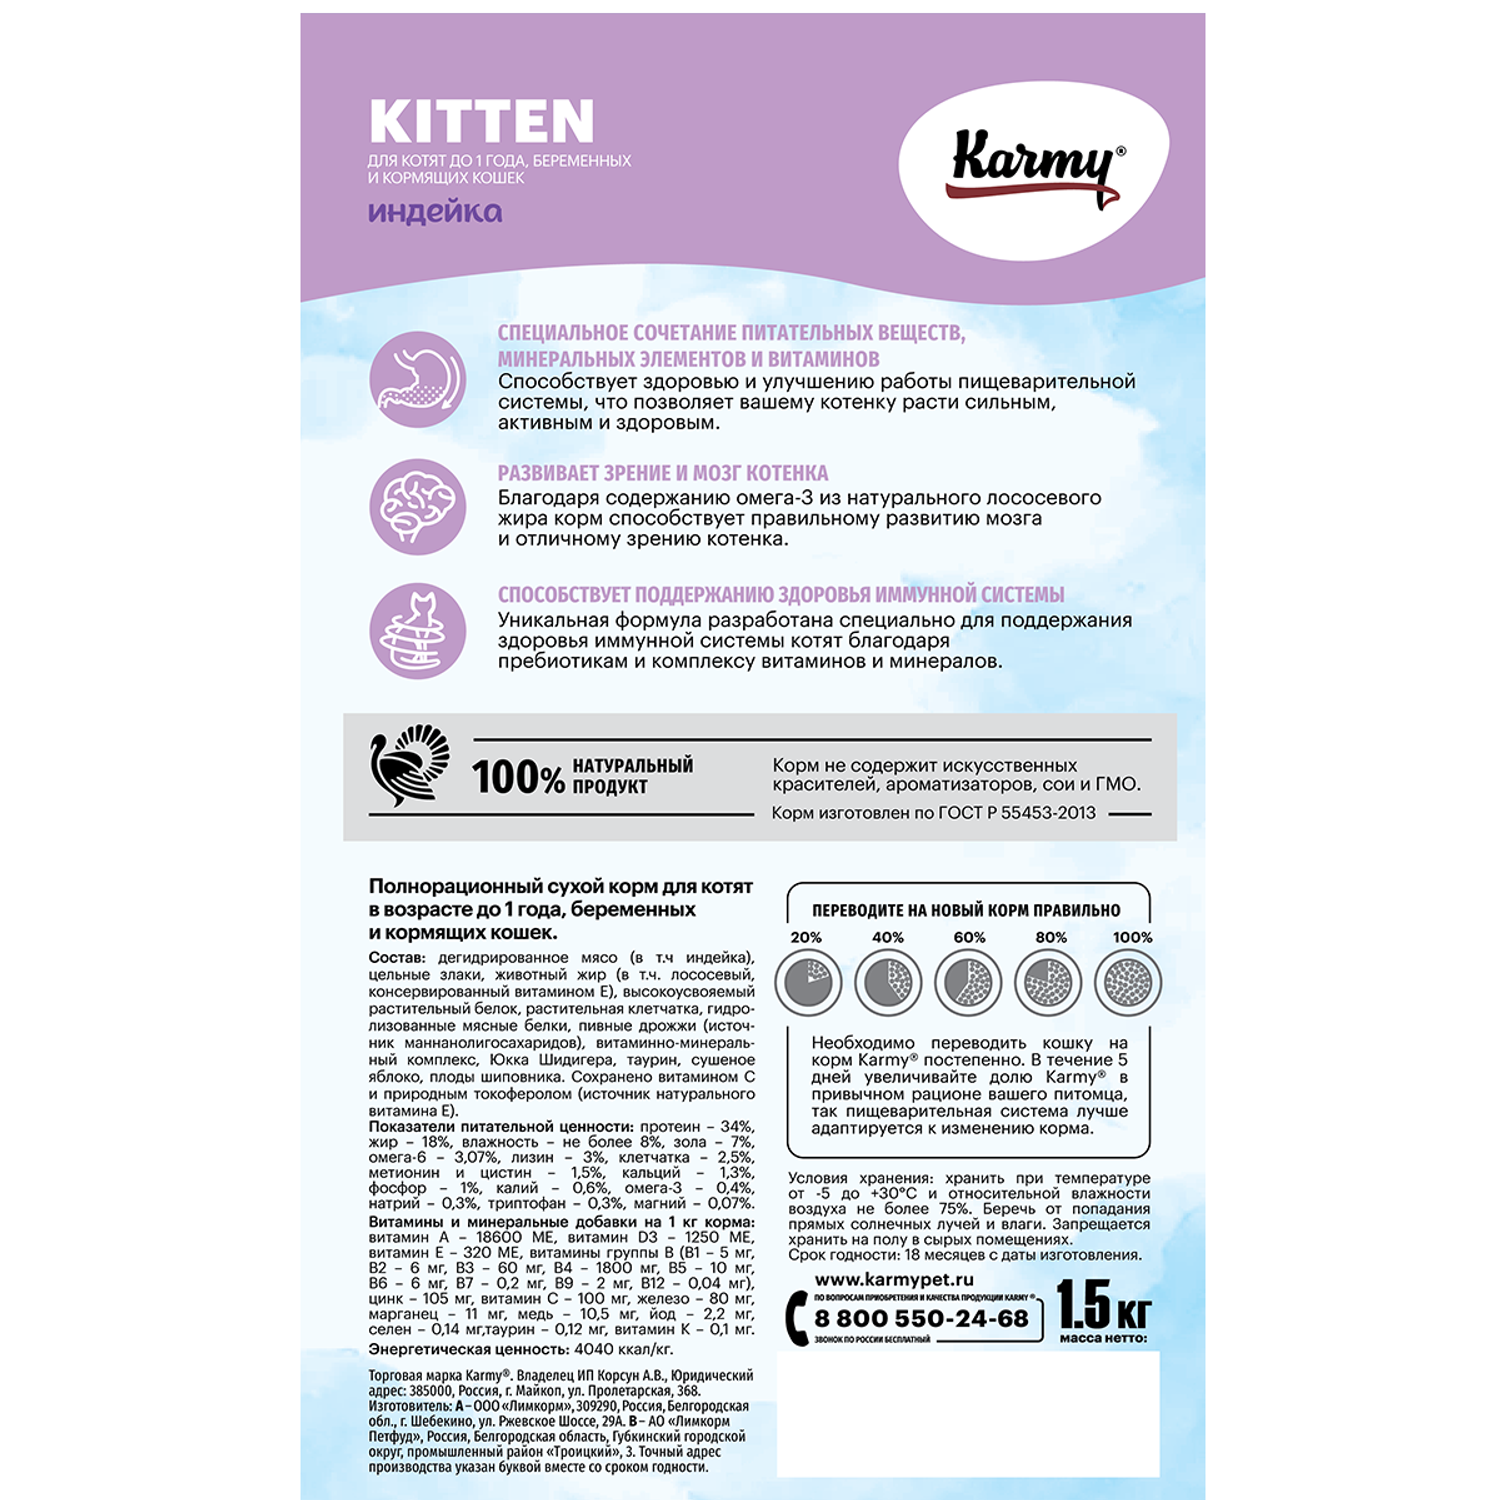 Корм для кошек Karmy 1.5кг Kitten для беременных и кормящих индейка - фото 2